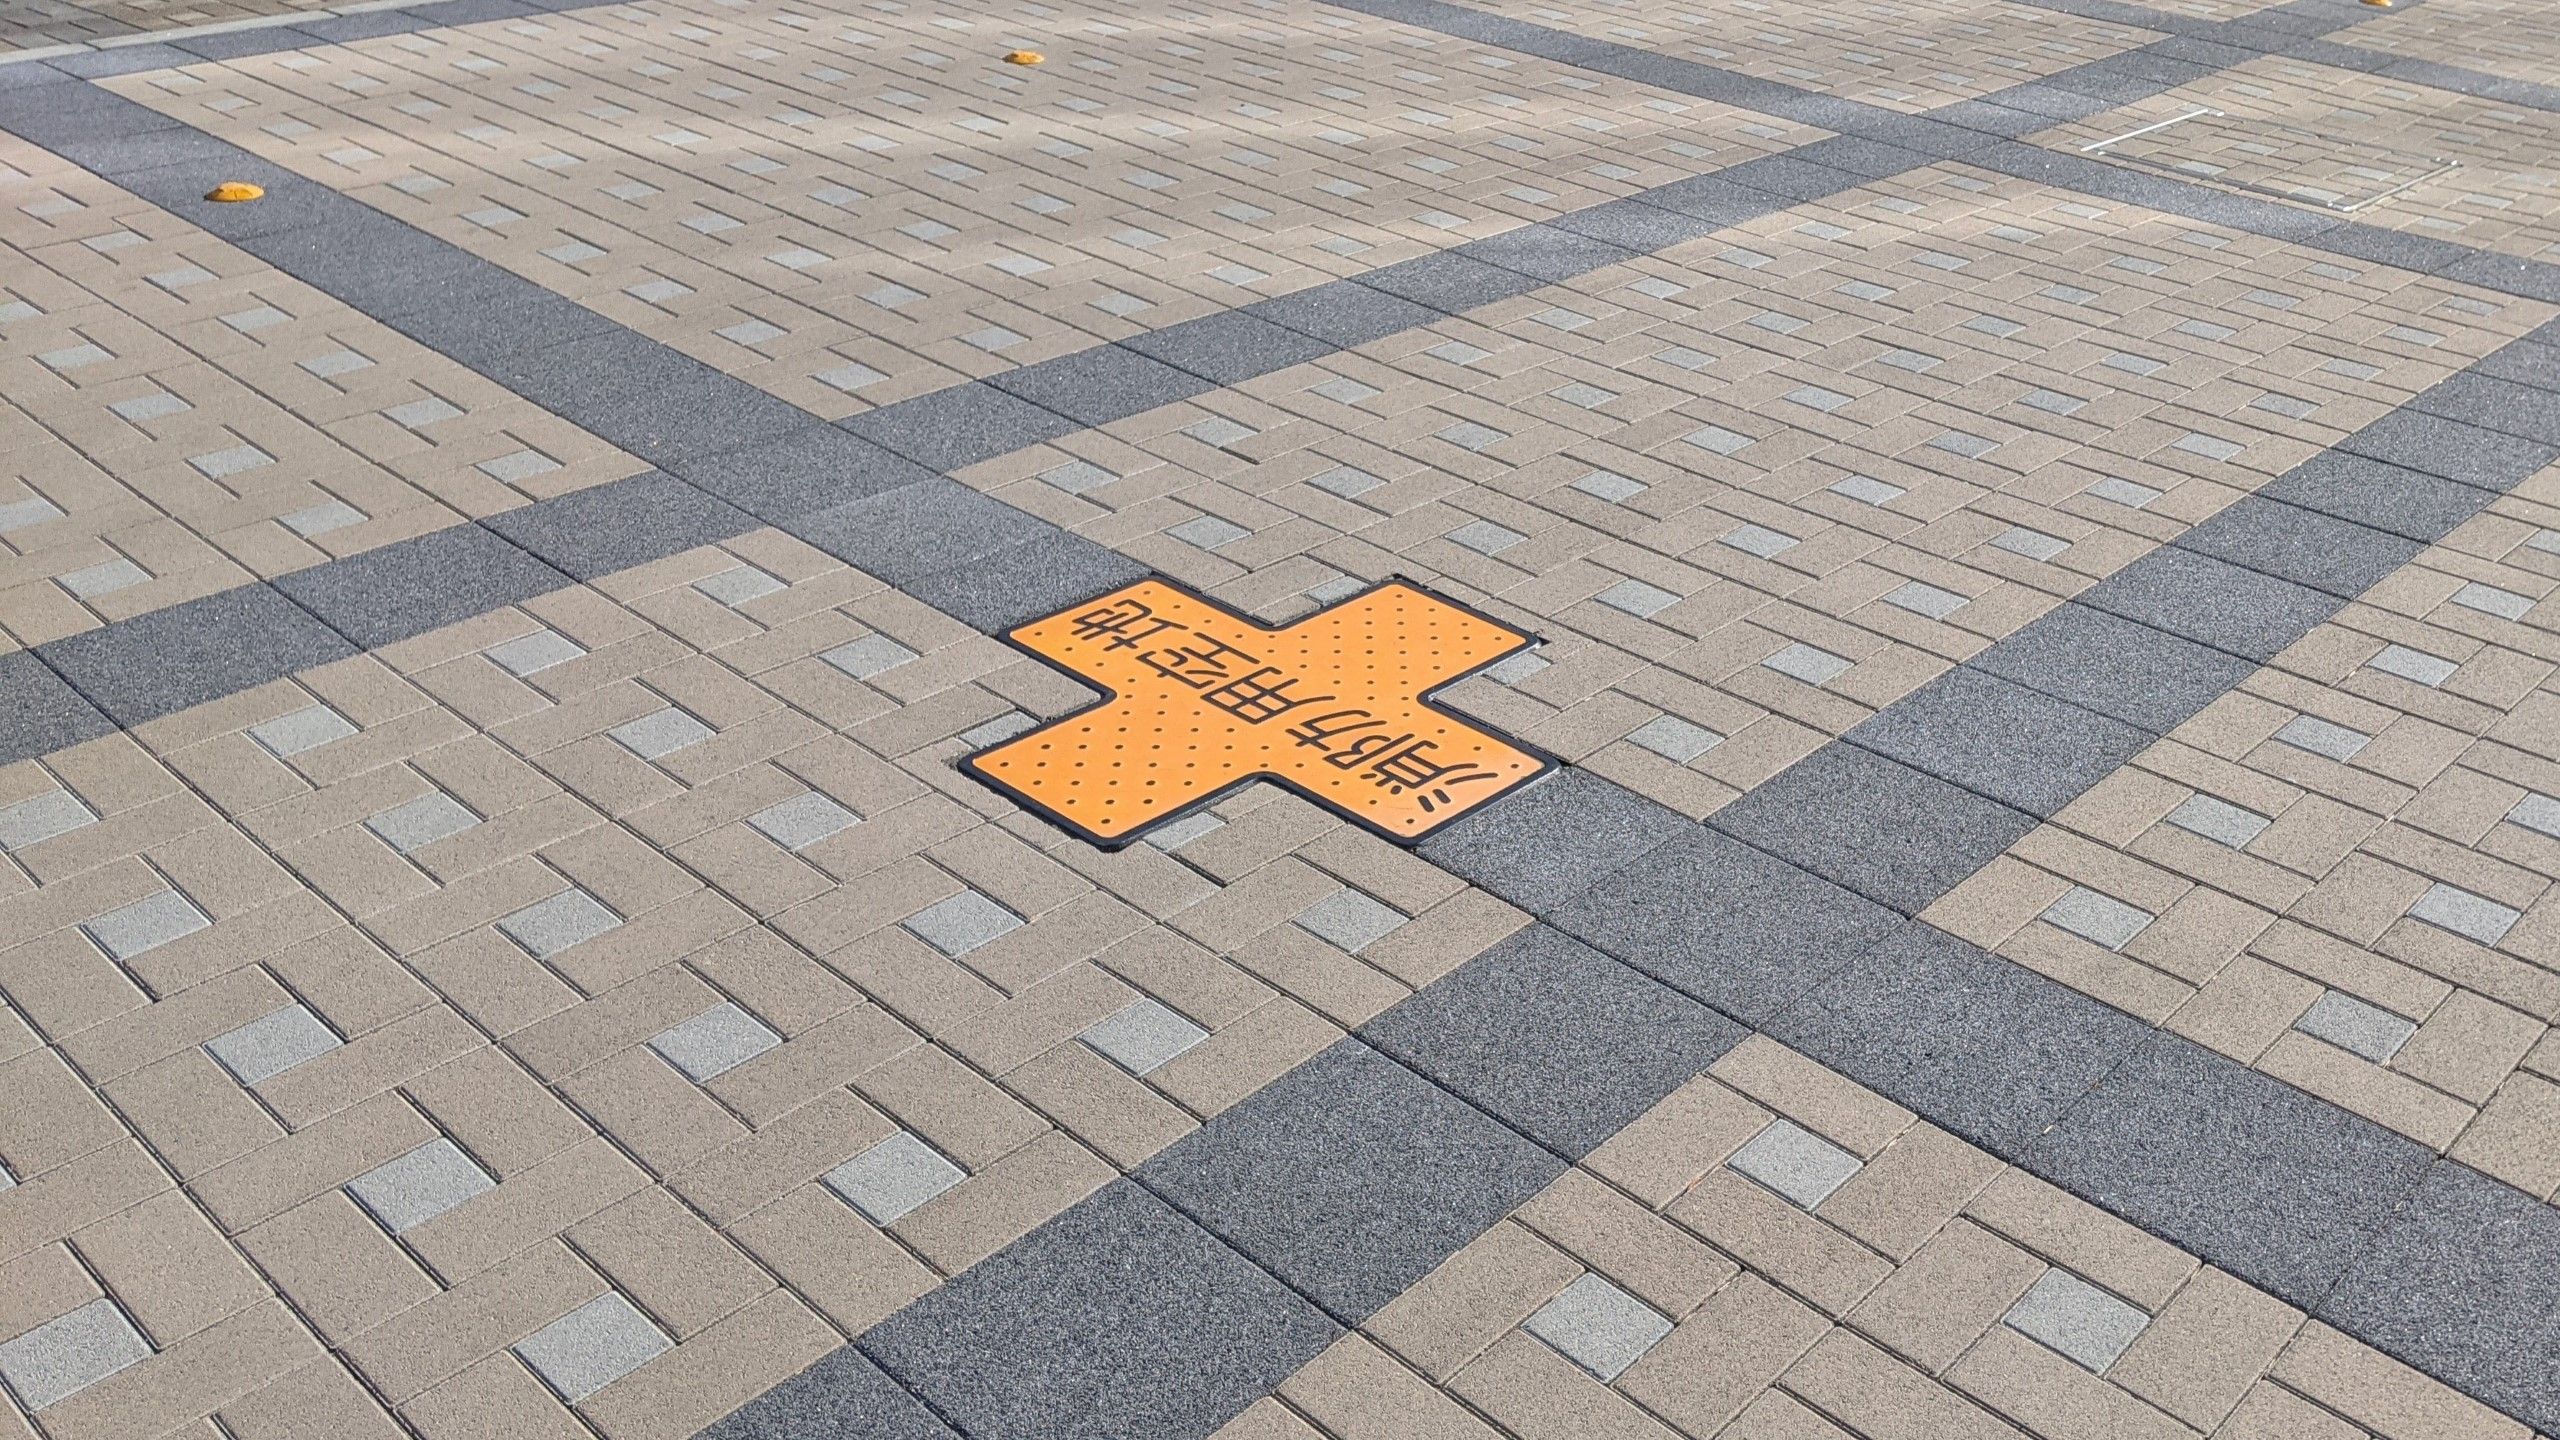 幾何学模様の石畳の中に、点字ブロックのような黄色のブロックが十字に並び、その中央に消防用空地と書かれている。